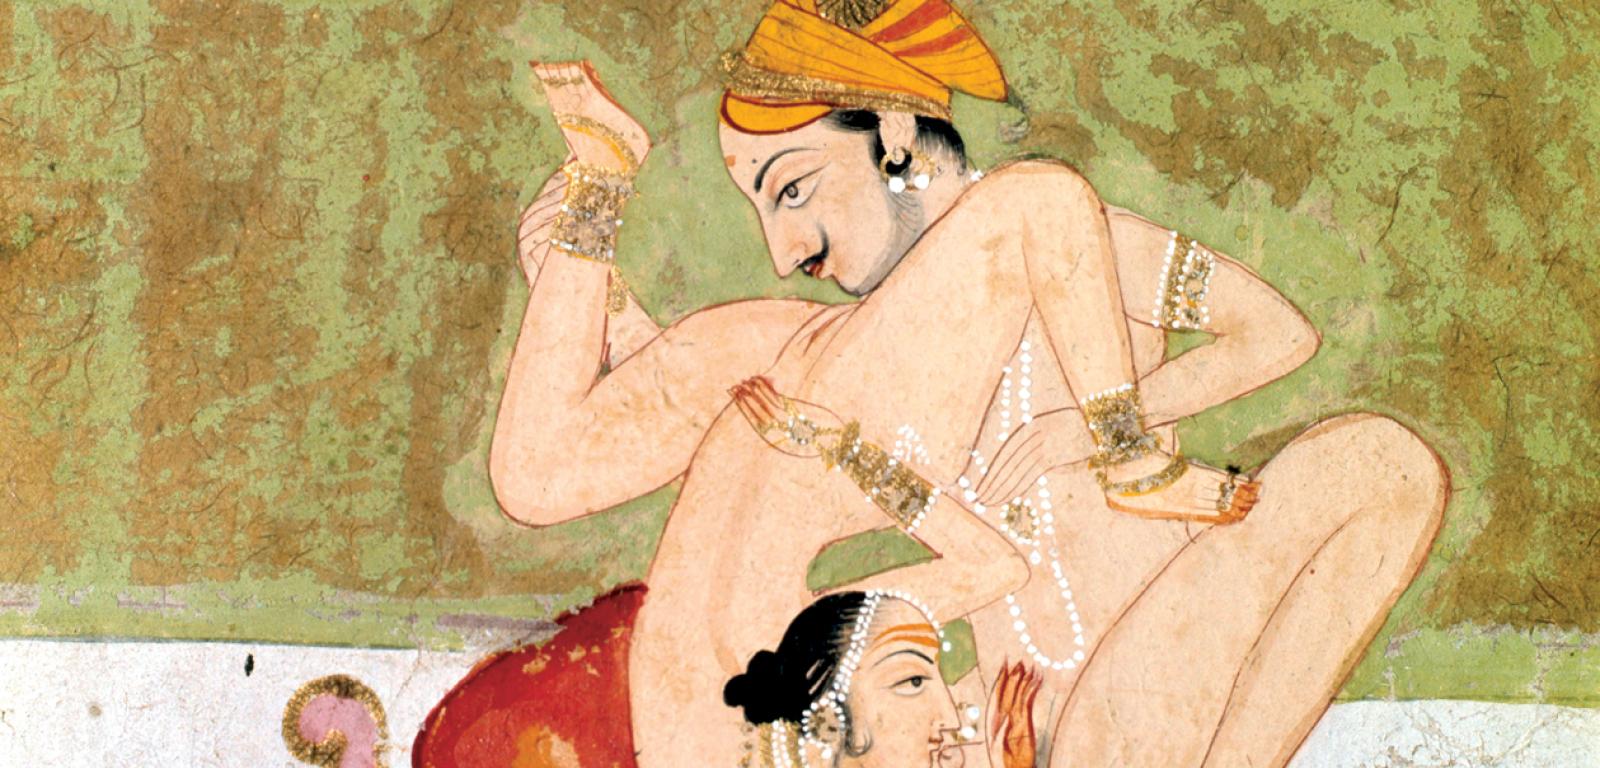 Ilustracja seksu oralnego z Kama sutry – indyjskiego traktatu o seksualności z I–IV w.